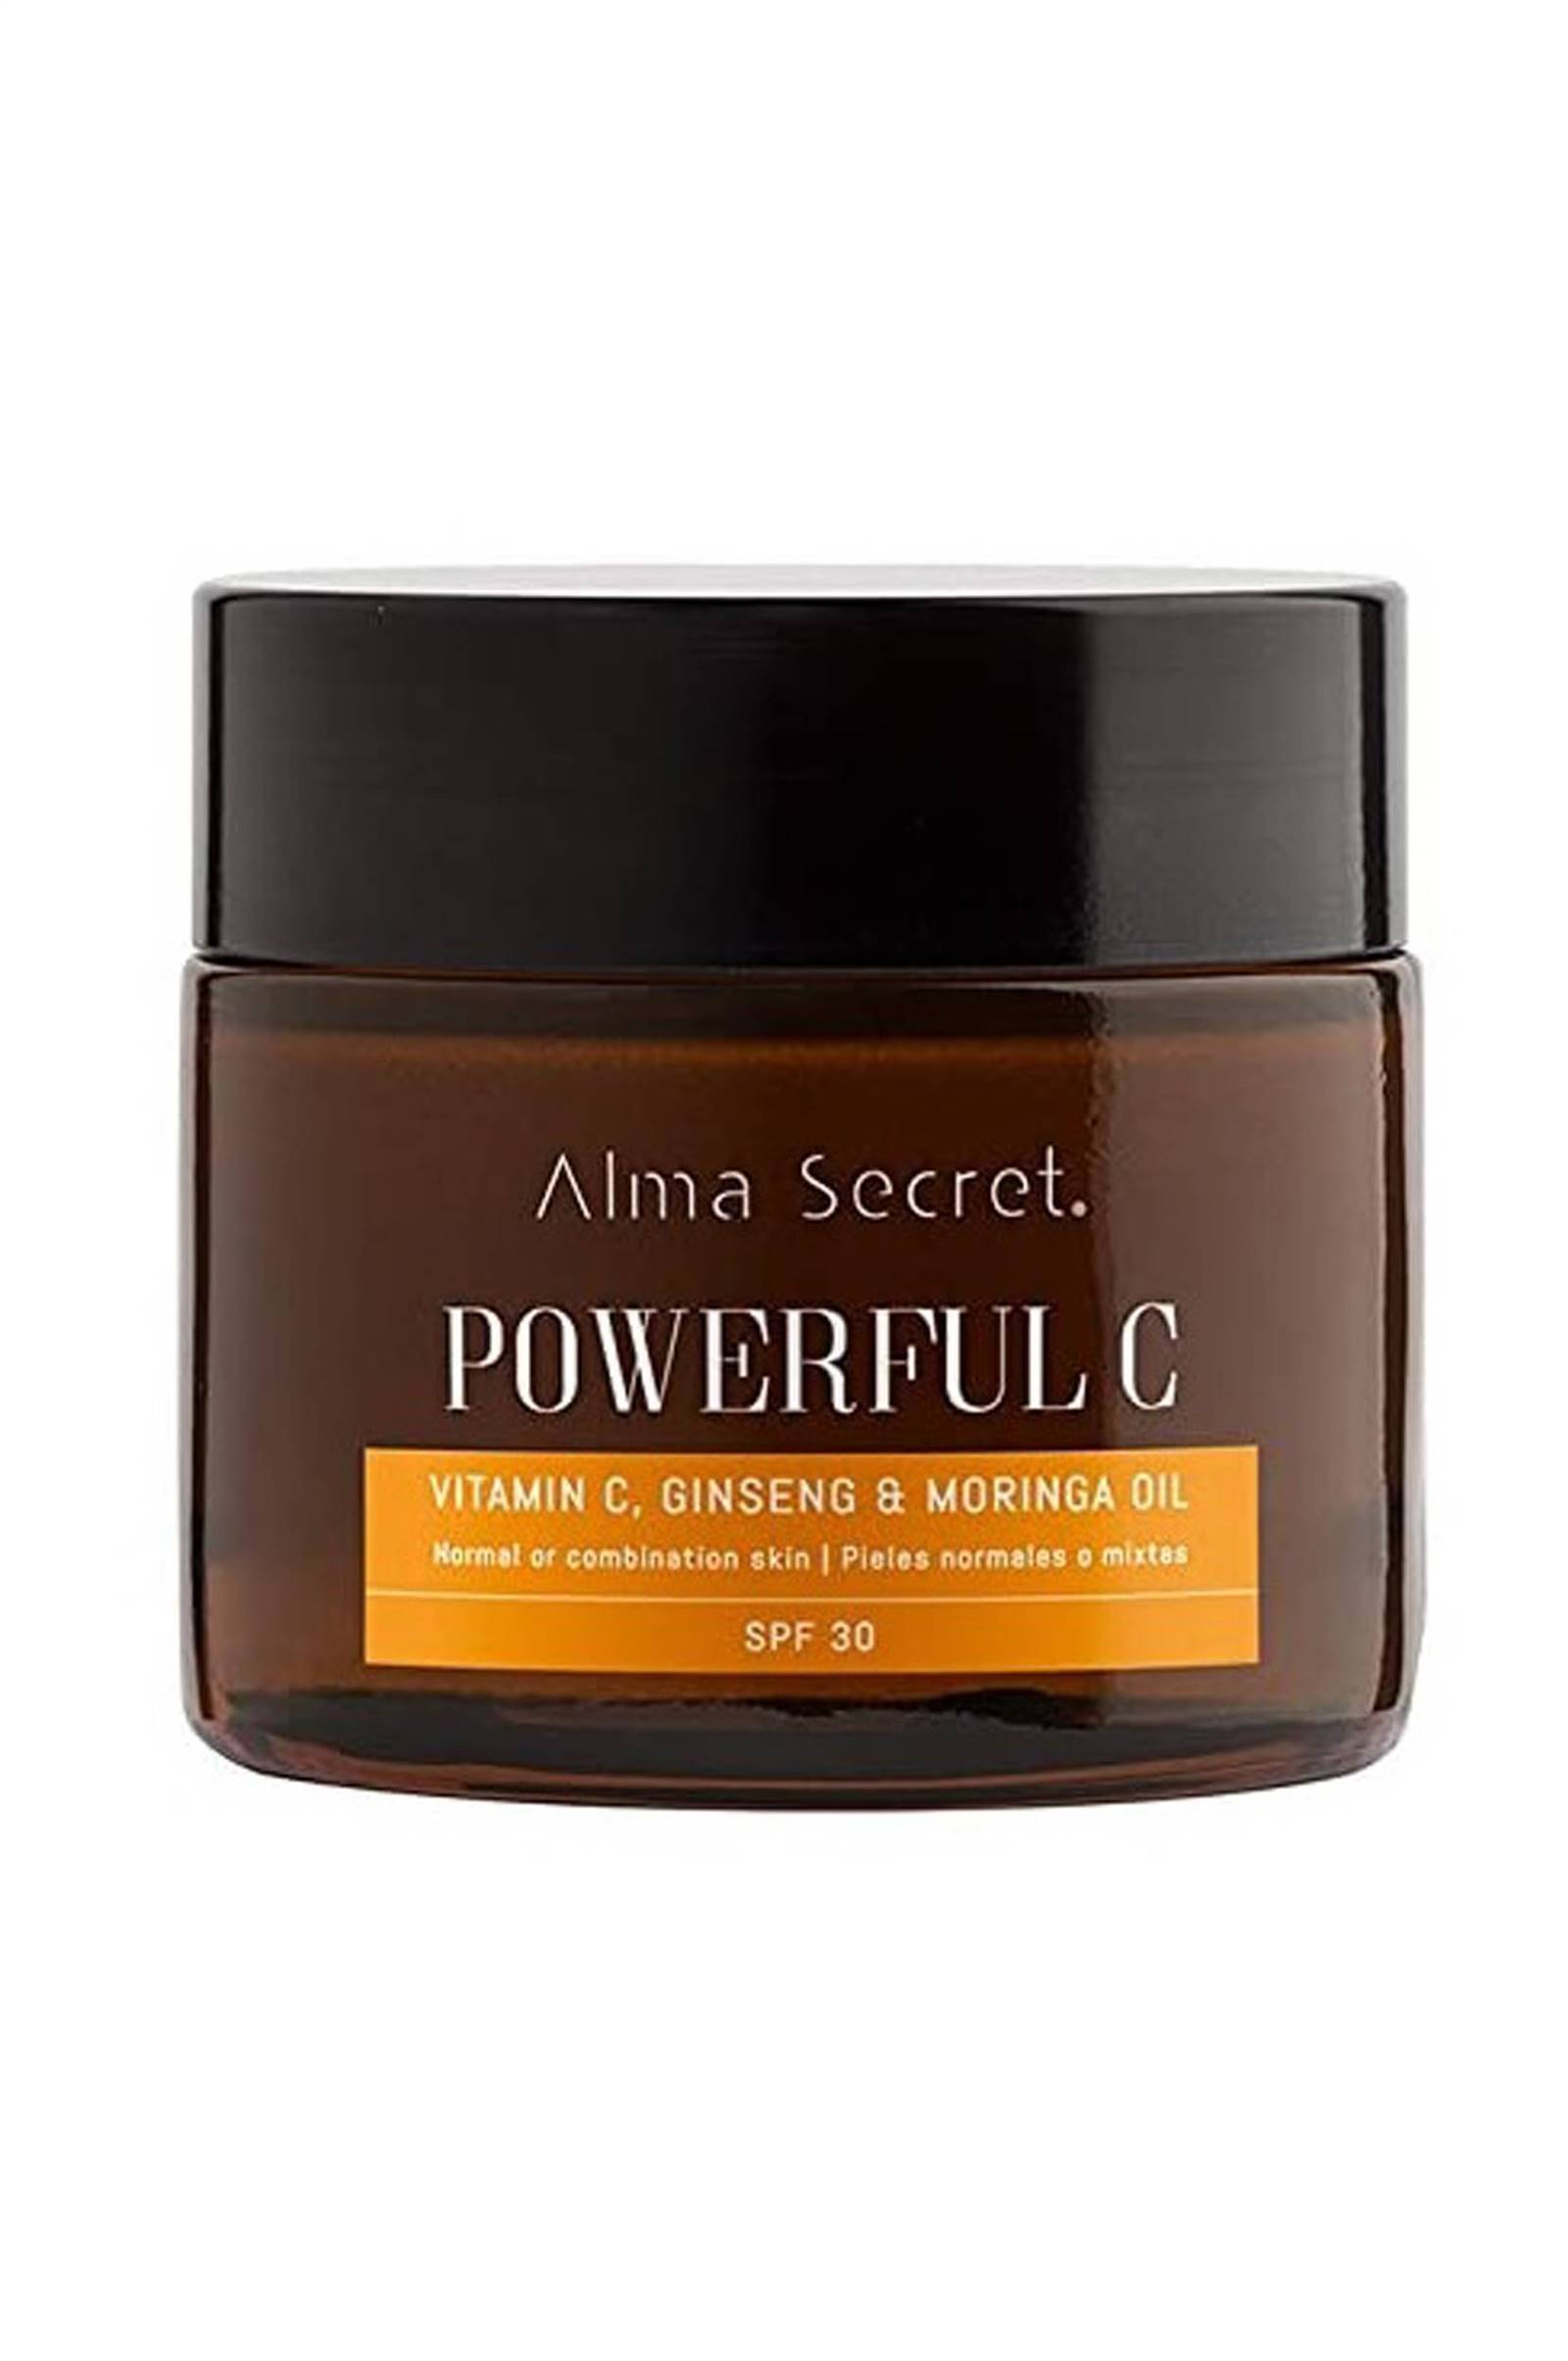 Mejores cremas antiedad: Powerful C de Alma Secret.